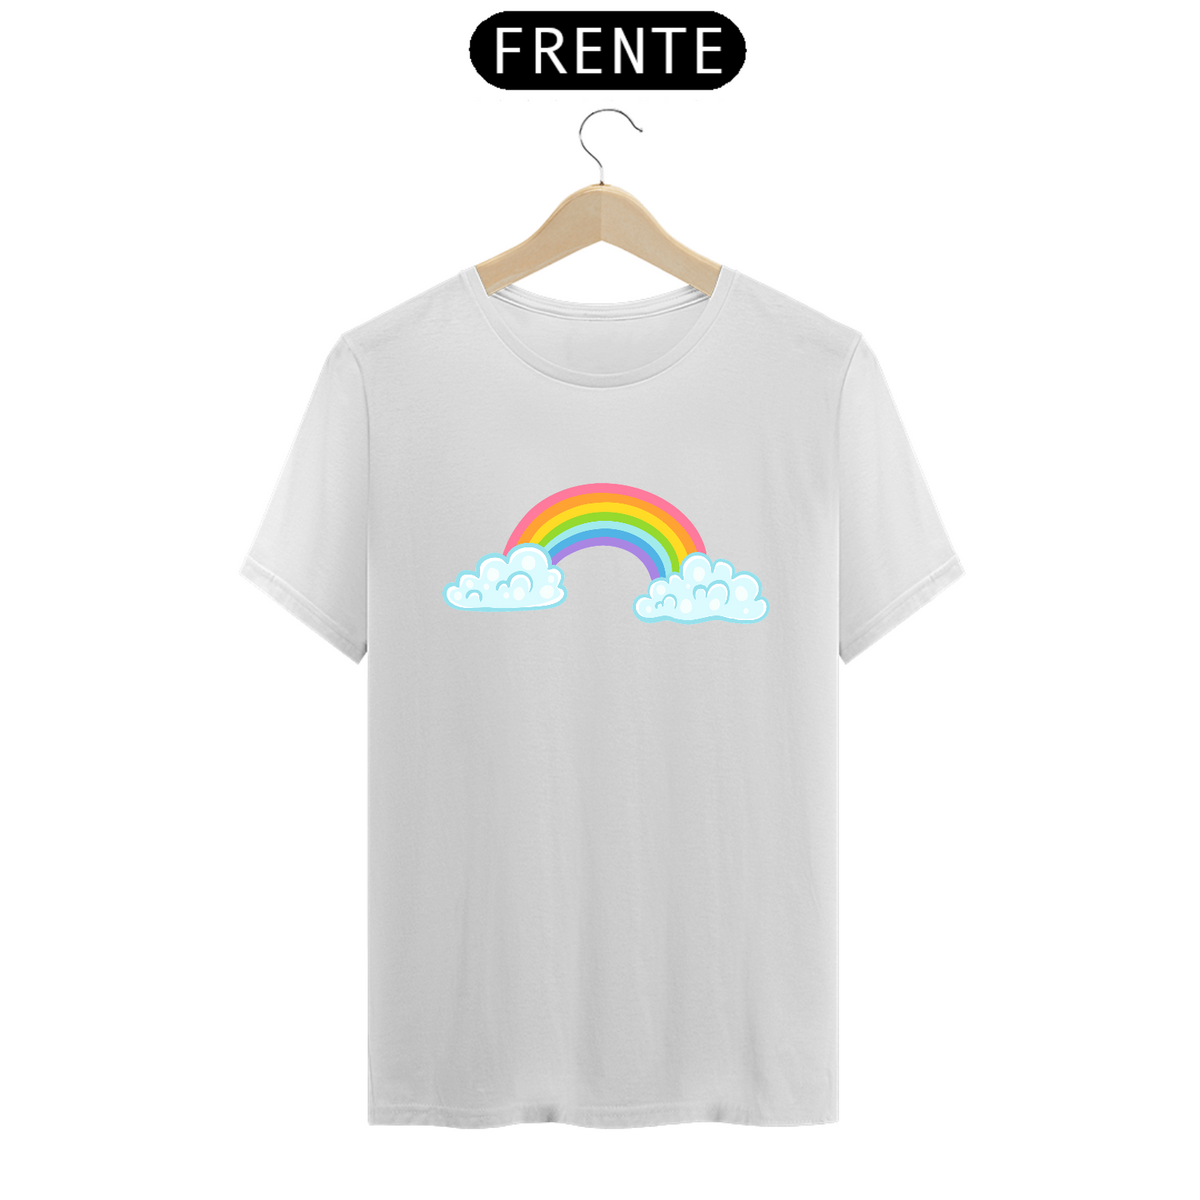 Nome do produto: Camiseta arco-íris